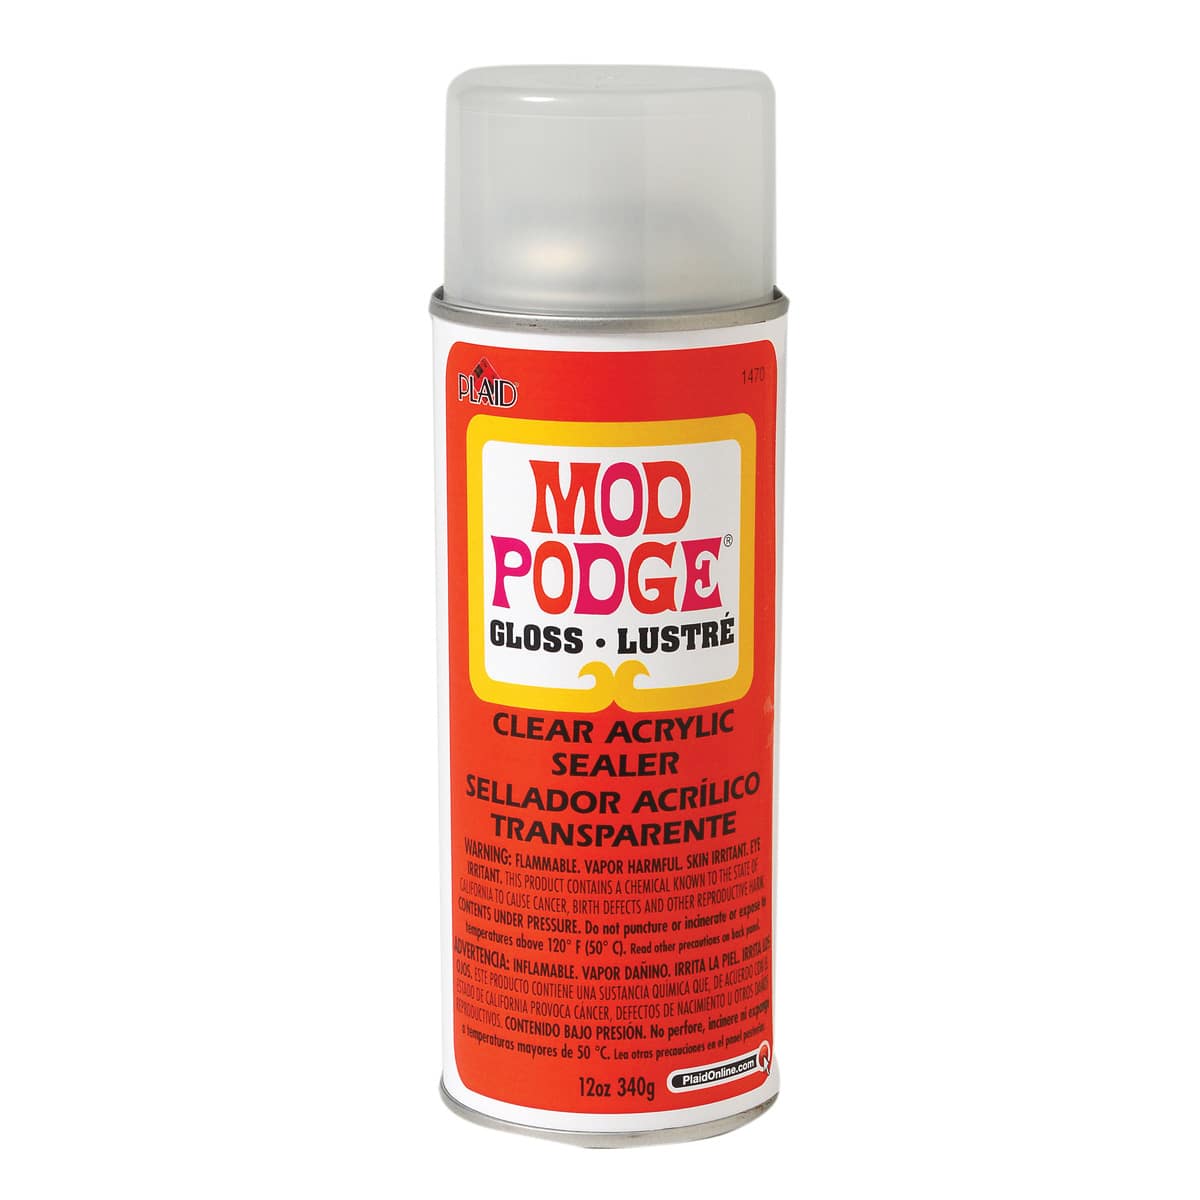 Mod Podge&#xAE; Clear Acrylic Sealer, Gloss